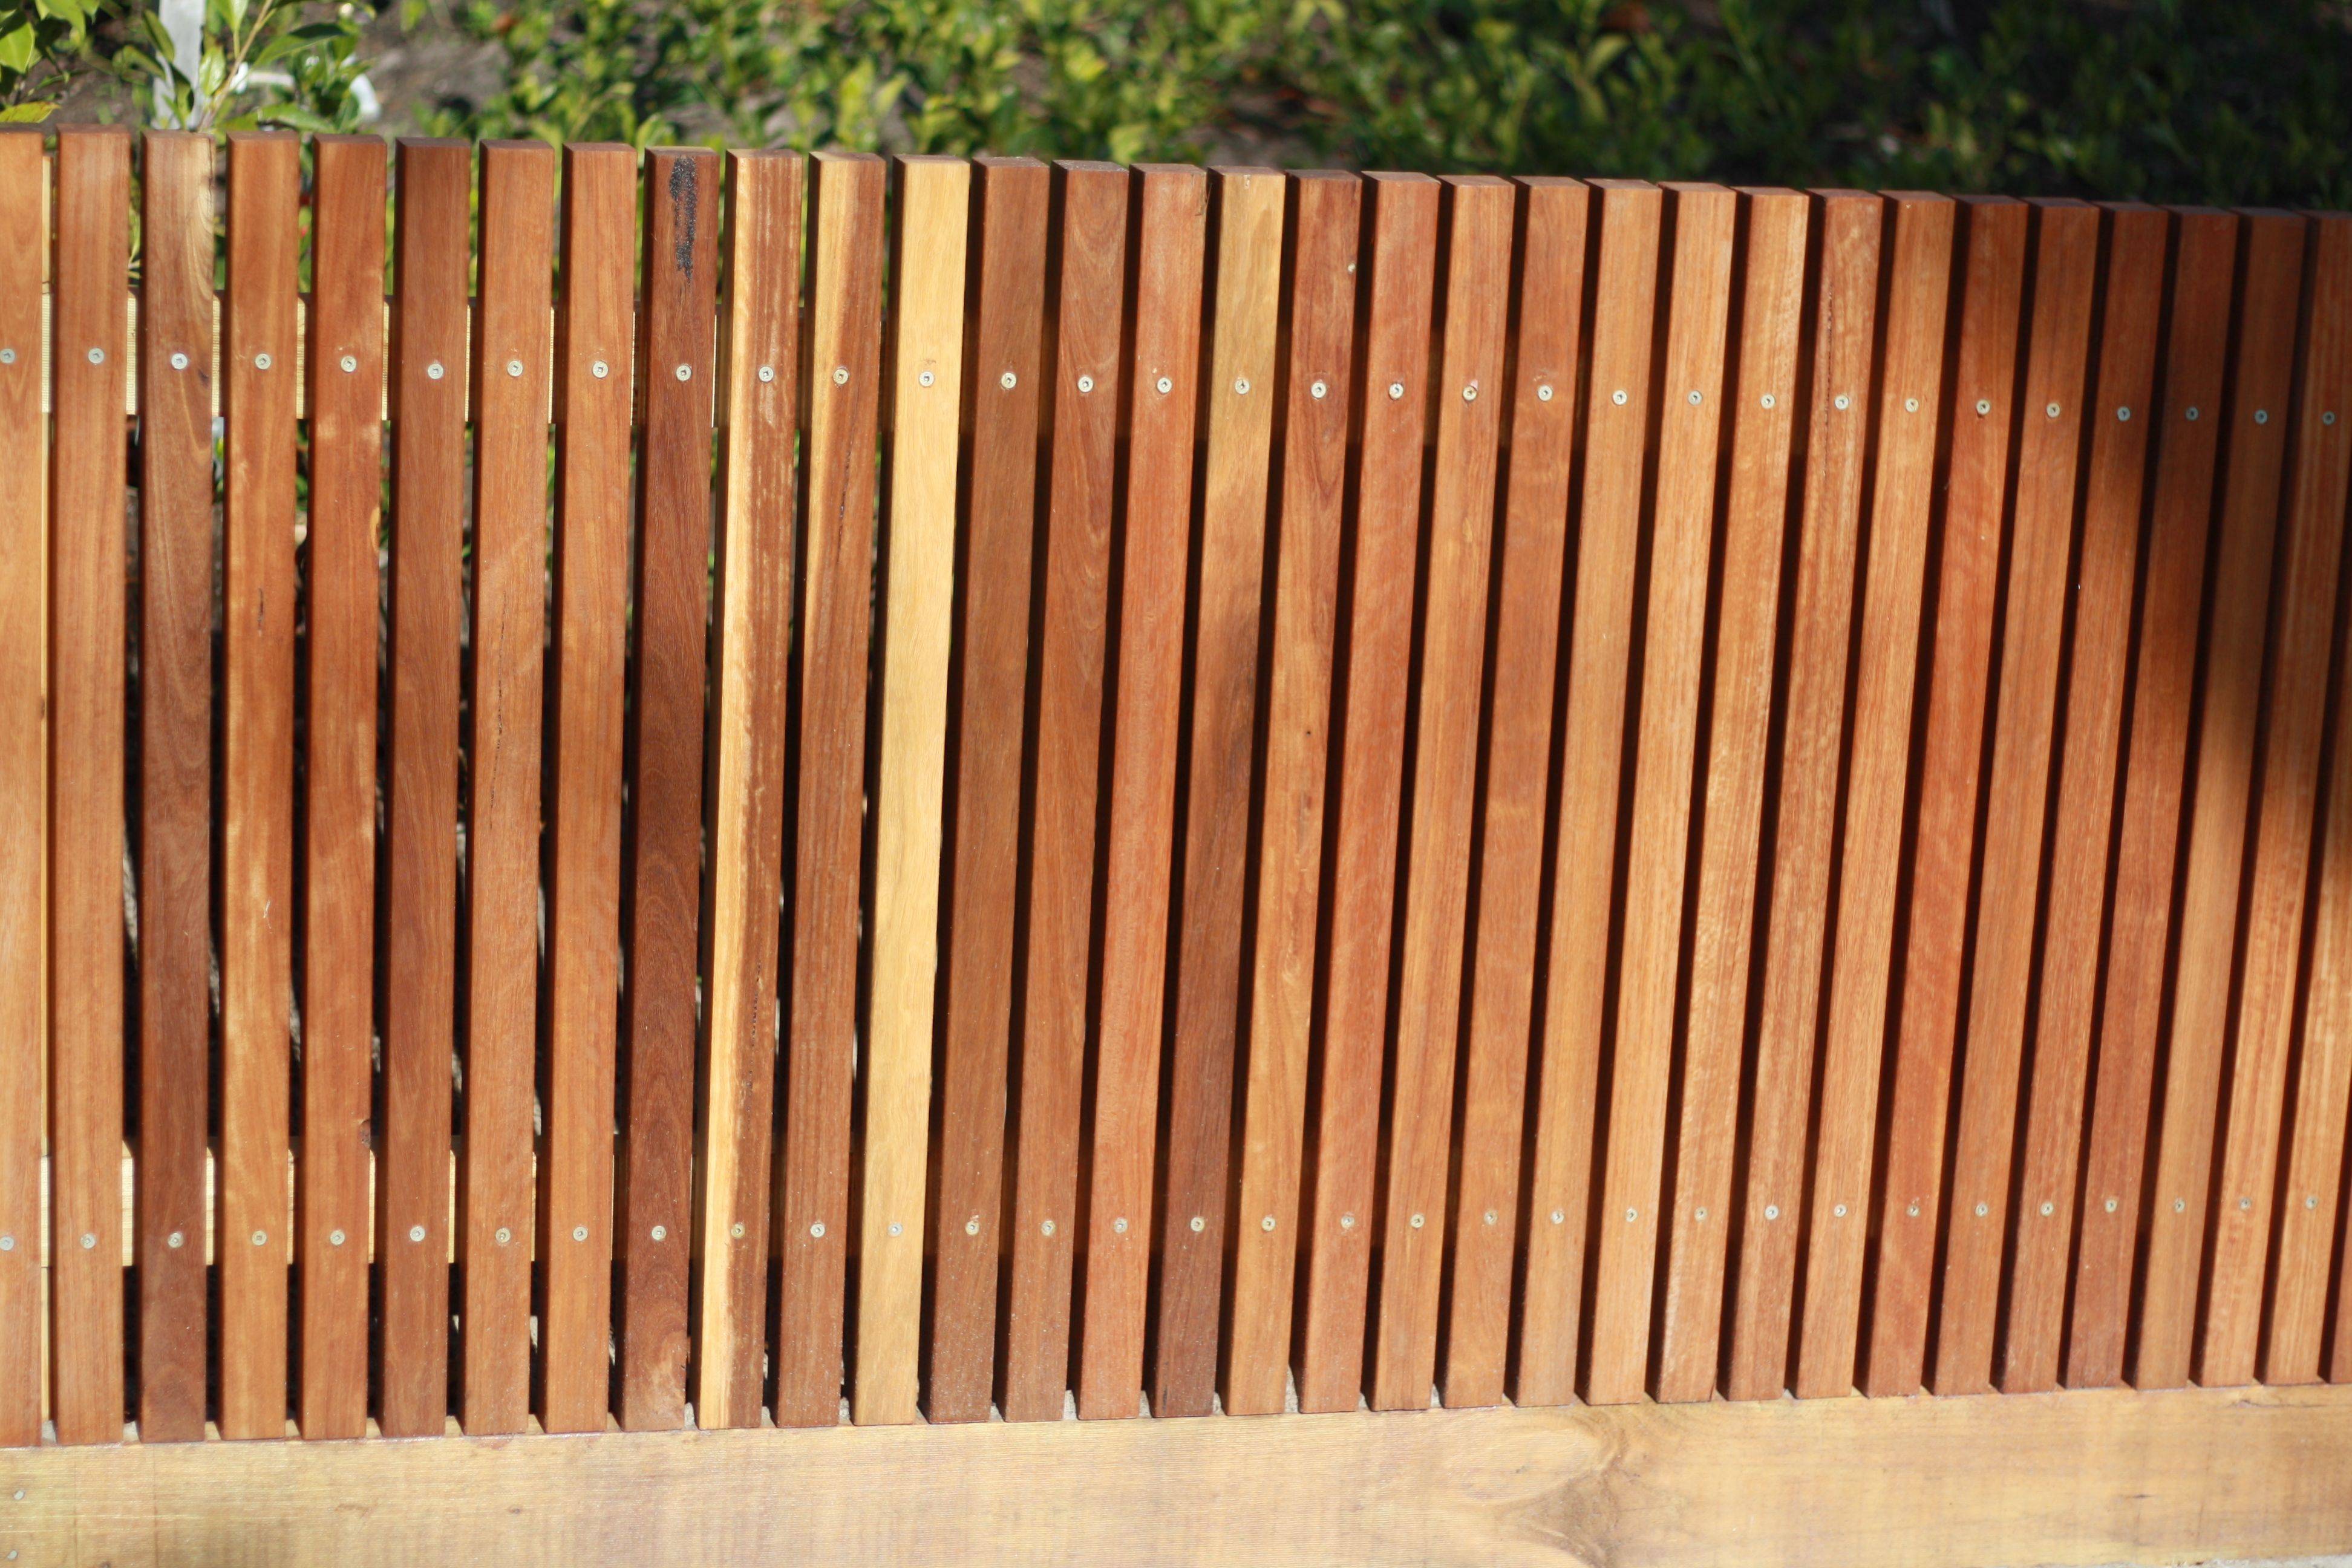 Забор из досок горизонтальный и вертикальный: фото, виды из реек, обожженной обрезной деревянной дюймовки